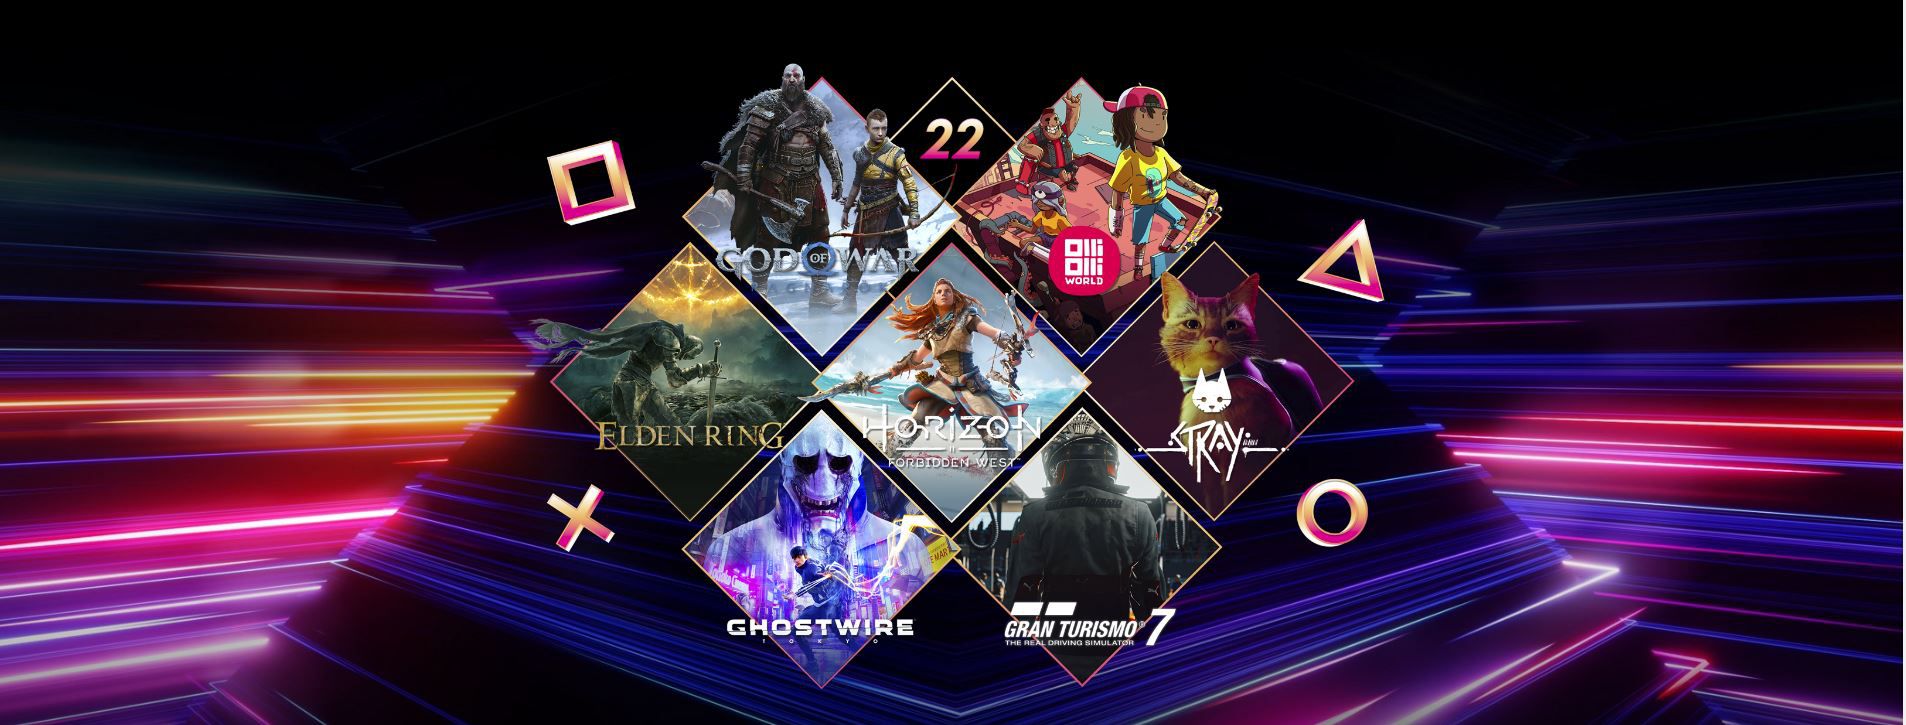 PlayStation công bố danh sách 22 trò chơi trên PS5 sẽ phát hành trong năm nay